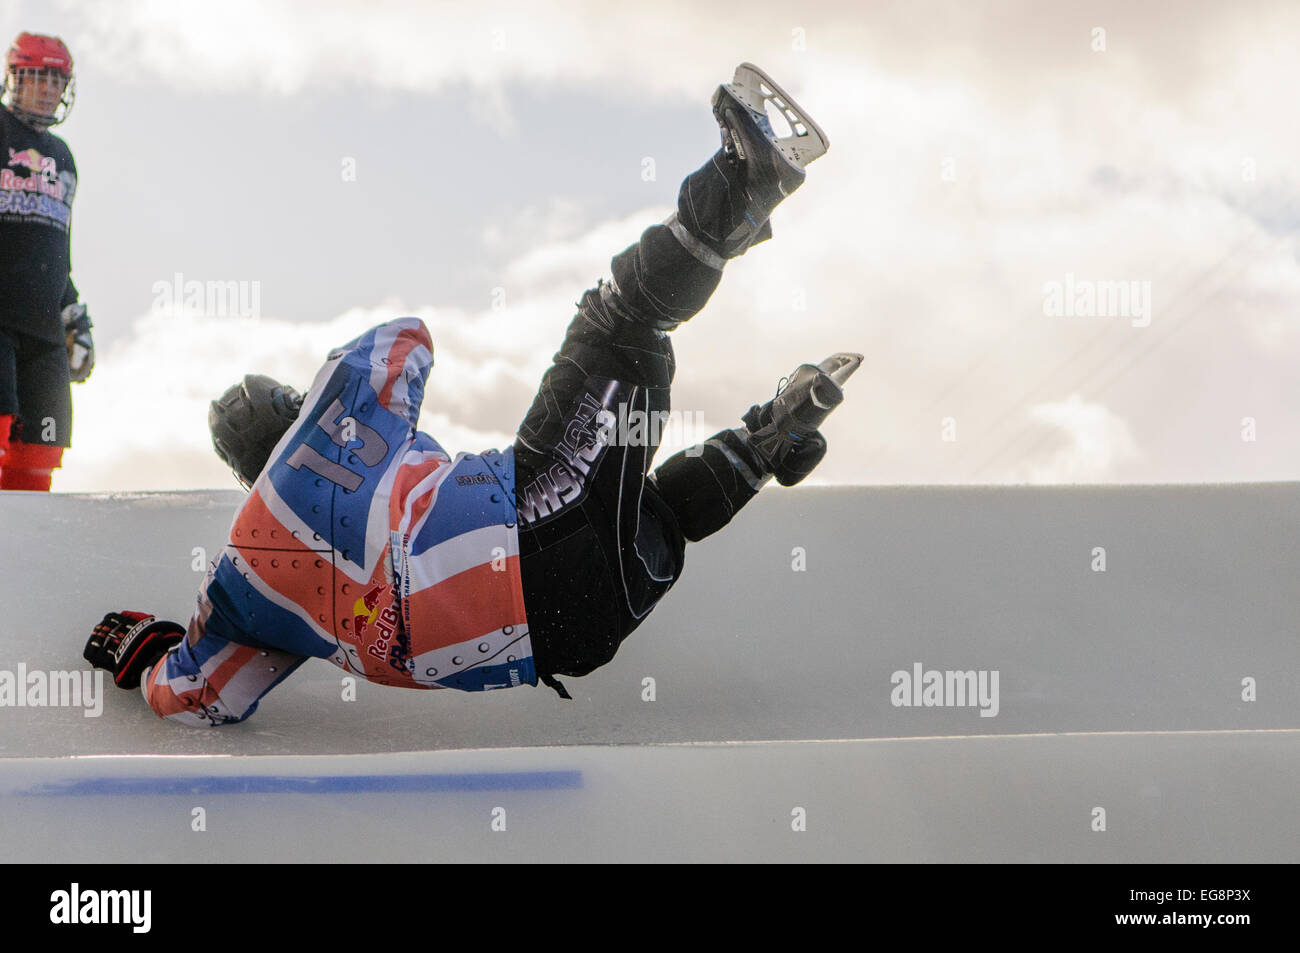 Belfast, Irlande du Nord. 19 févr. 2015 - Un concurrent débutant tombe sur le haut d'une colline au Red Bull Crashed Ice Crédit : Stephen Barnes/Alamy Live News Banque D'Images